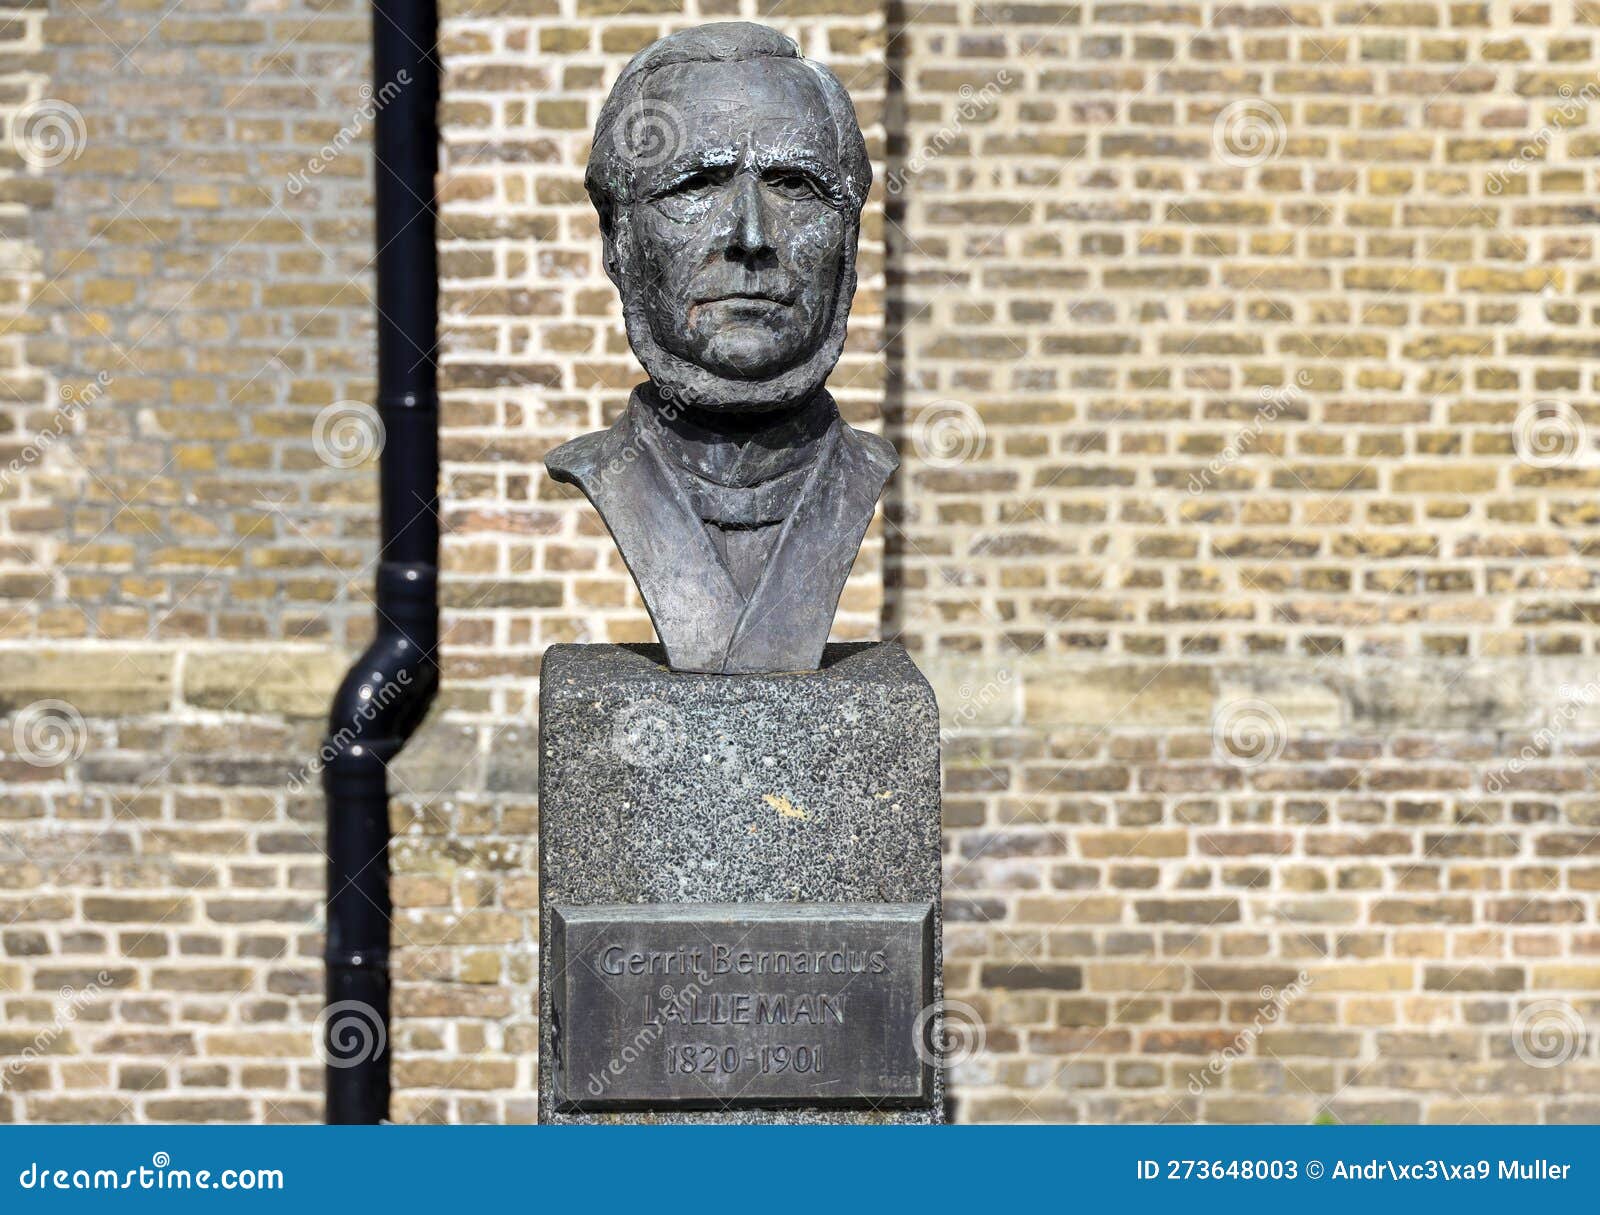 Statue of Meester Gerrit Bernardus Lalleman in Moordrecht in Honor of ...